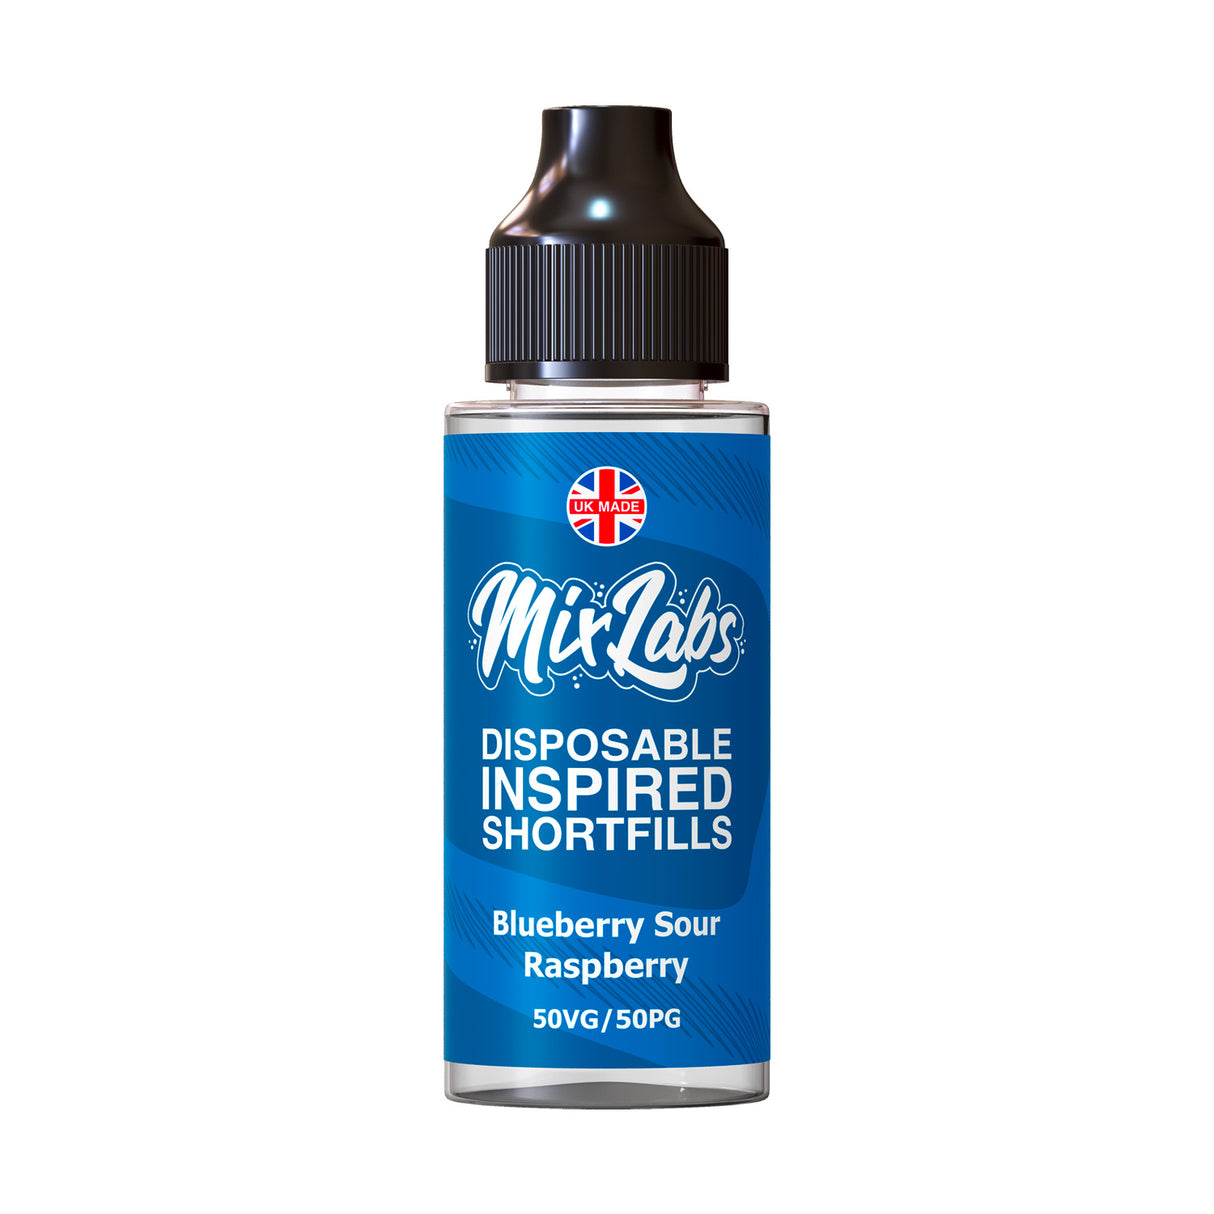 Disposable Inspired Shortfills - Blueberry Sour Raspberry 100ml